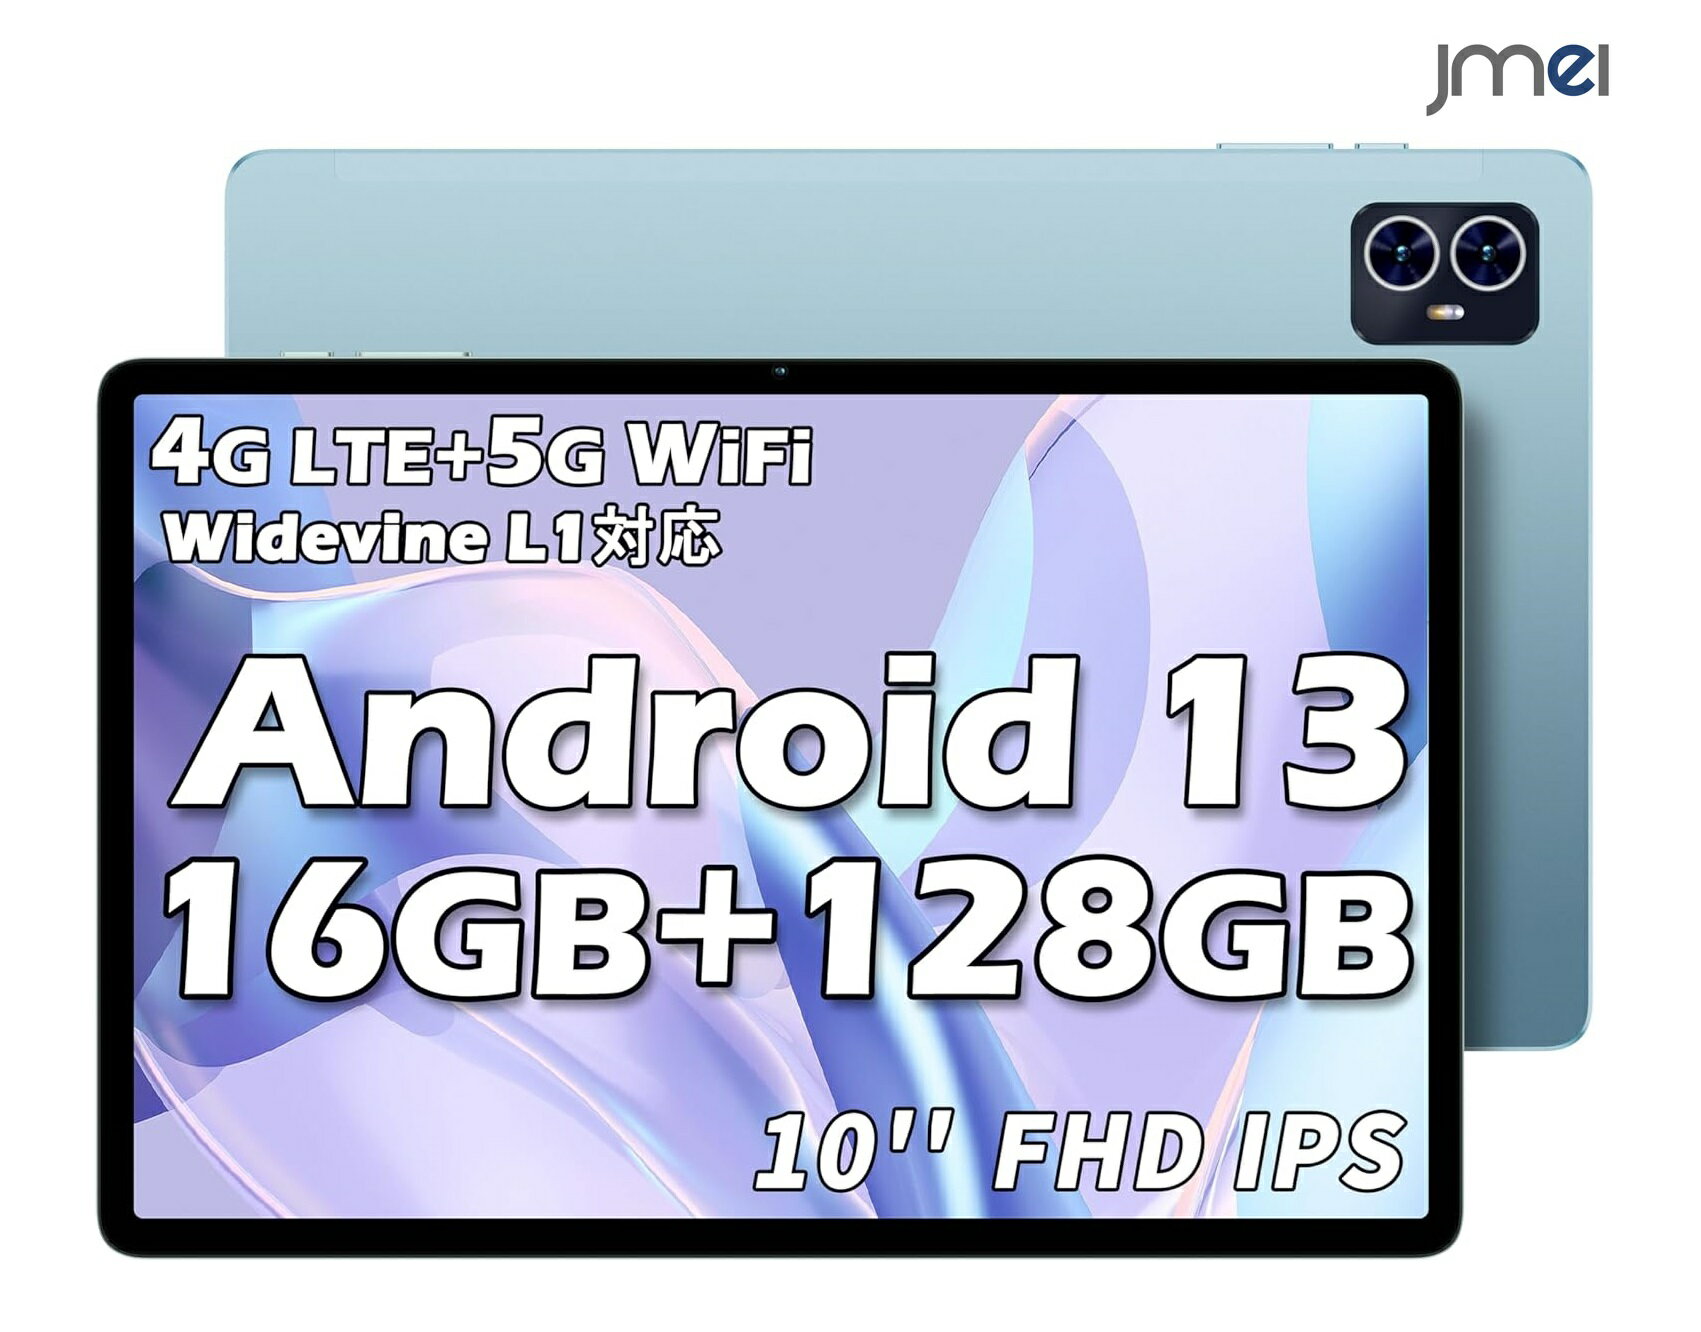 キッズタブレット タブレット アンドロイド 10インチ Android 13 16GB+128GB+1TB拡張 8コアCPU タブレット Widevine L1対応 1920×1200 FHD IPS 画面 4G LTE SIMフリー タブレット wi-fi モデルGMS認証+13MP 5MPカメラ 5G WiFi GPS BT5.0 6000mAh OTG 無線投影 顔認証